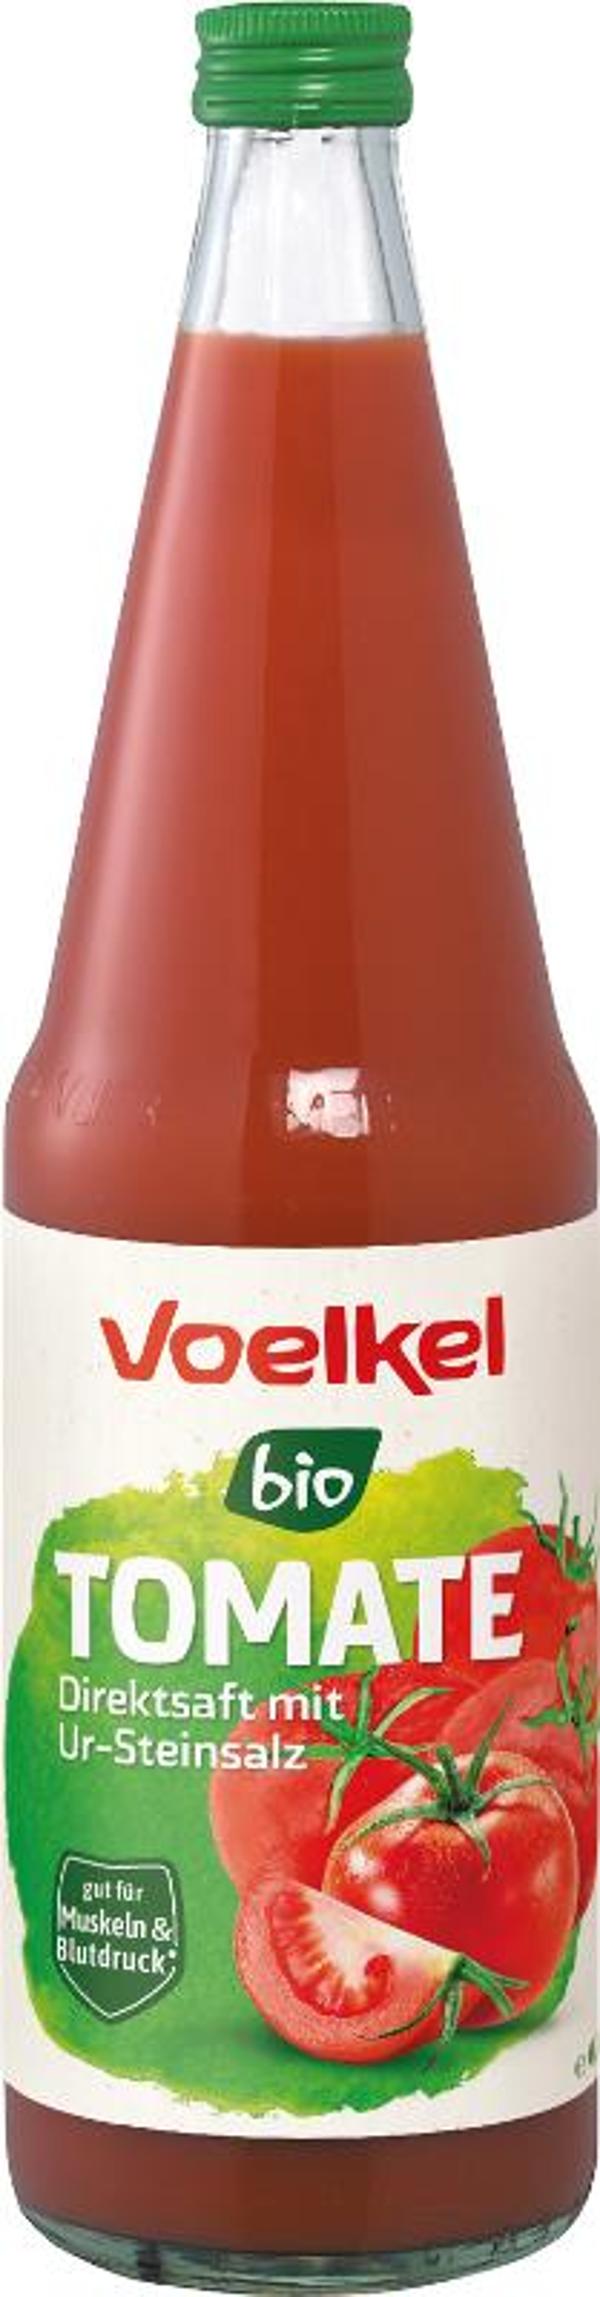 Produktfoto zu Tomatensaft 0,7l Flasche